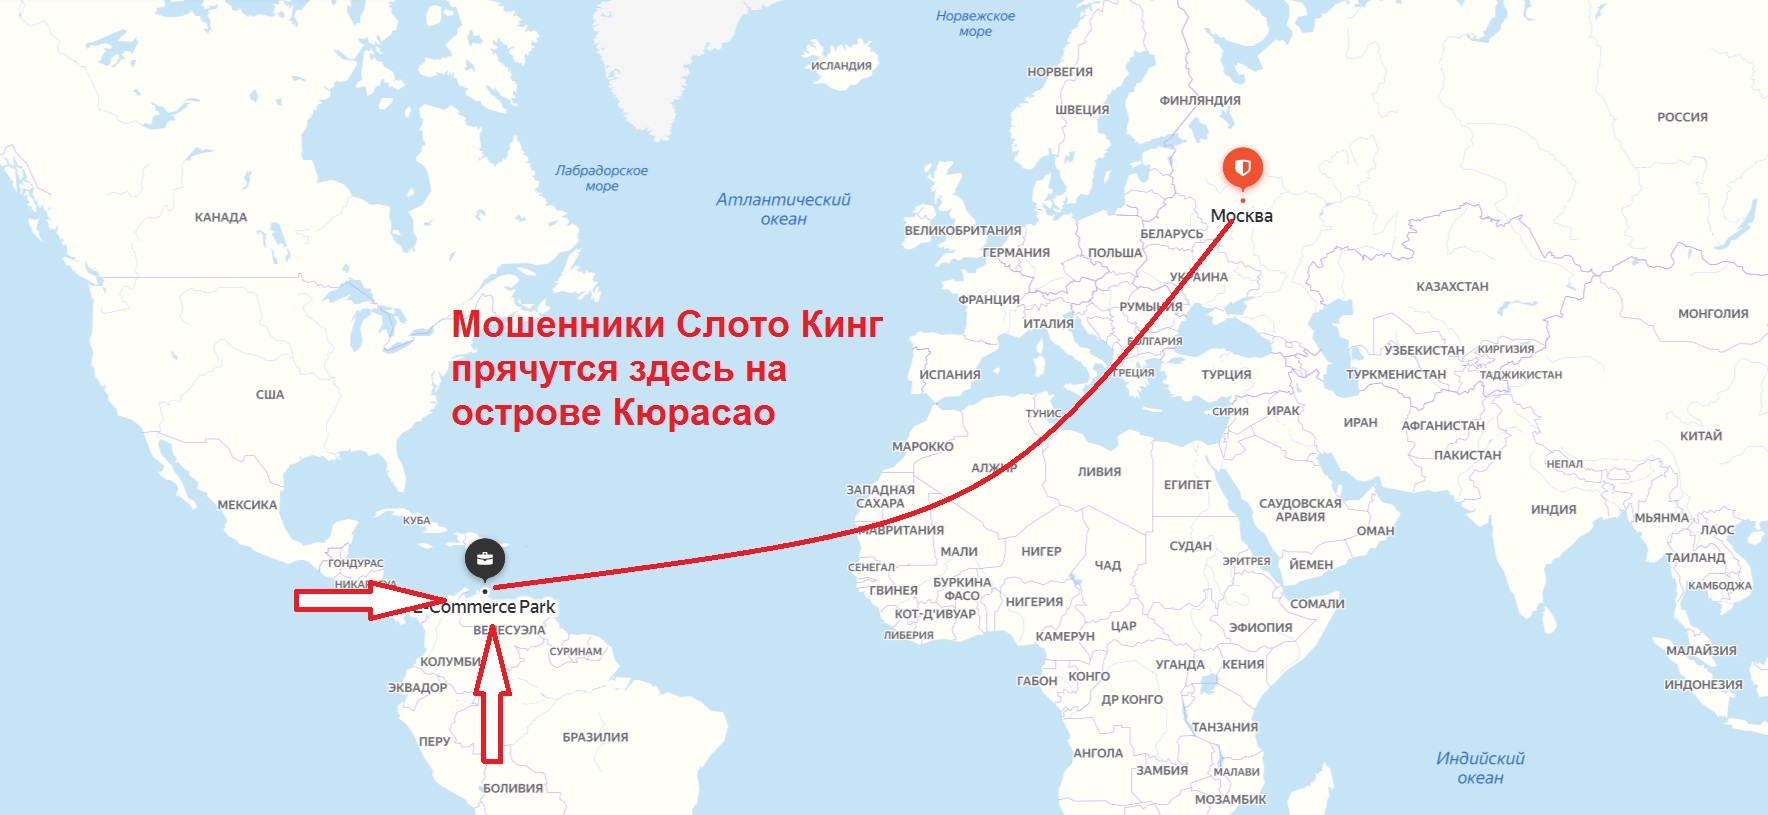 Время между москвой и магаданом. Расстояние от Японии до США В километрах. Расстояние от Магадана до Японии. Расстояние от Москвы до США. Расстояние от Москвы до Швеции.